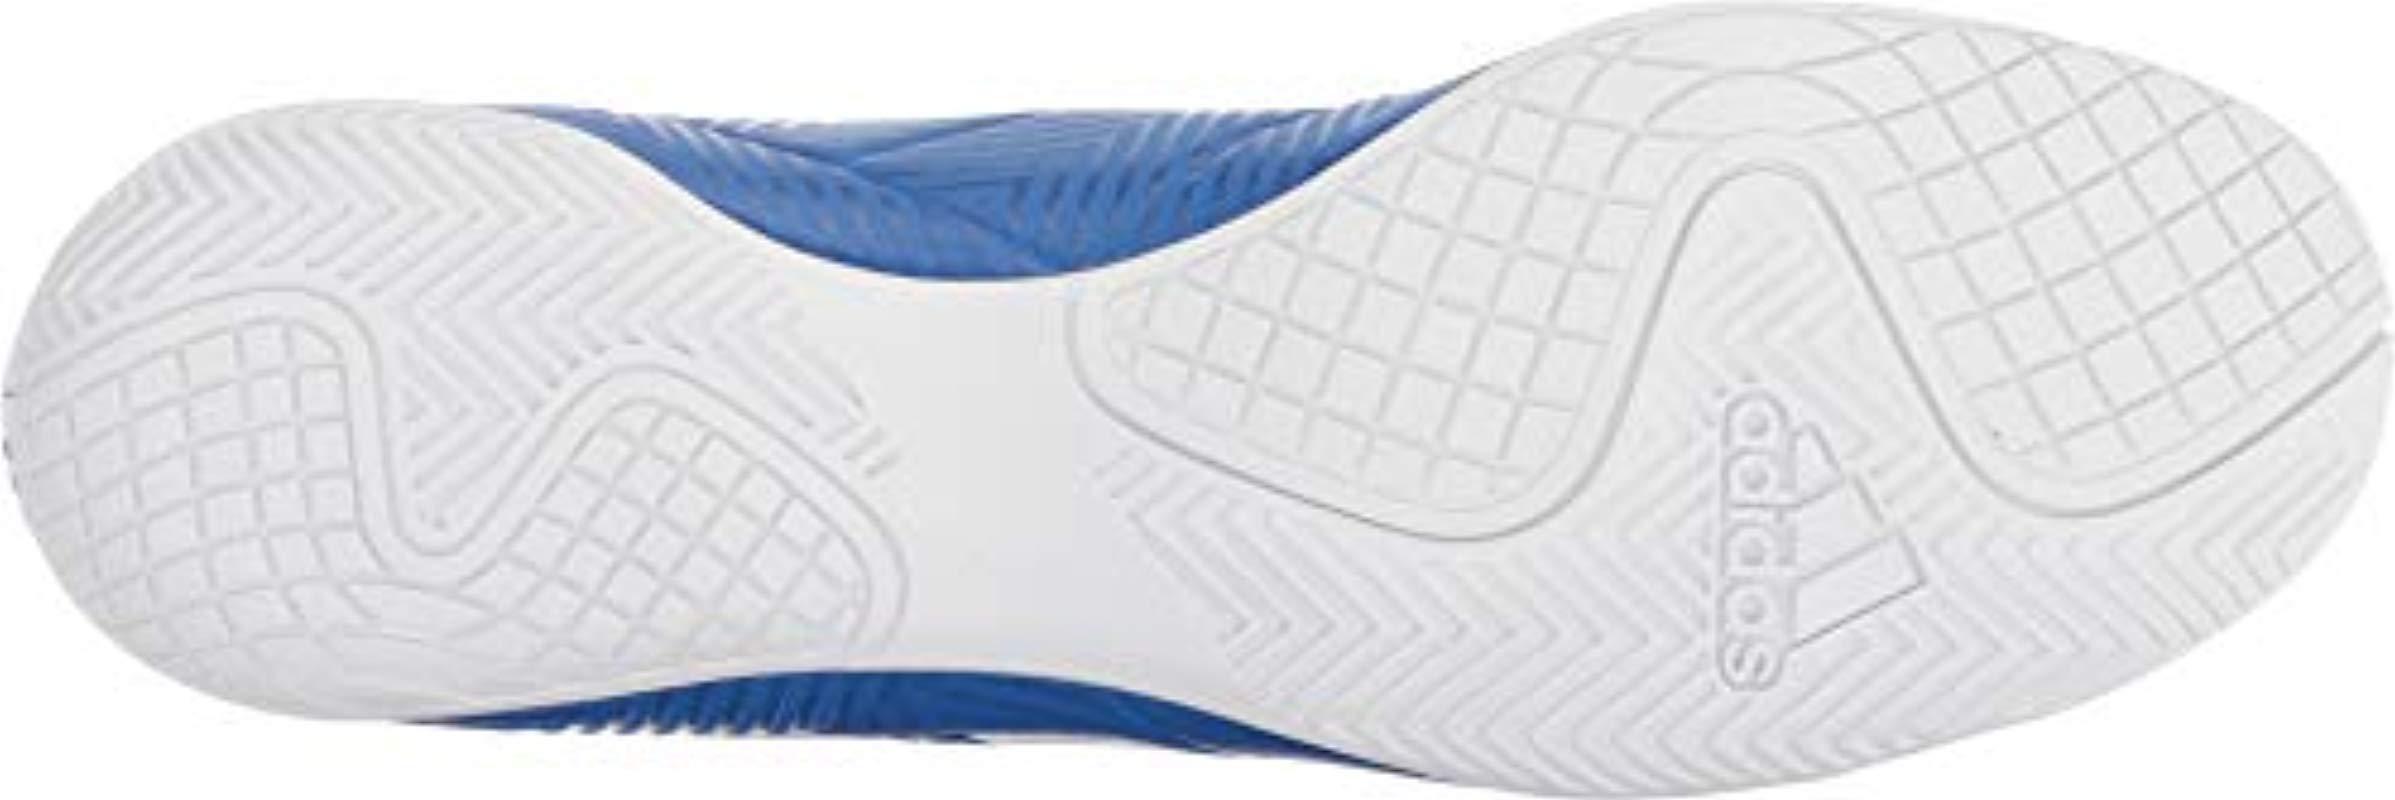 adidas men's nemeziz tango 18.4 indoor soccer shoes